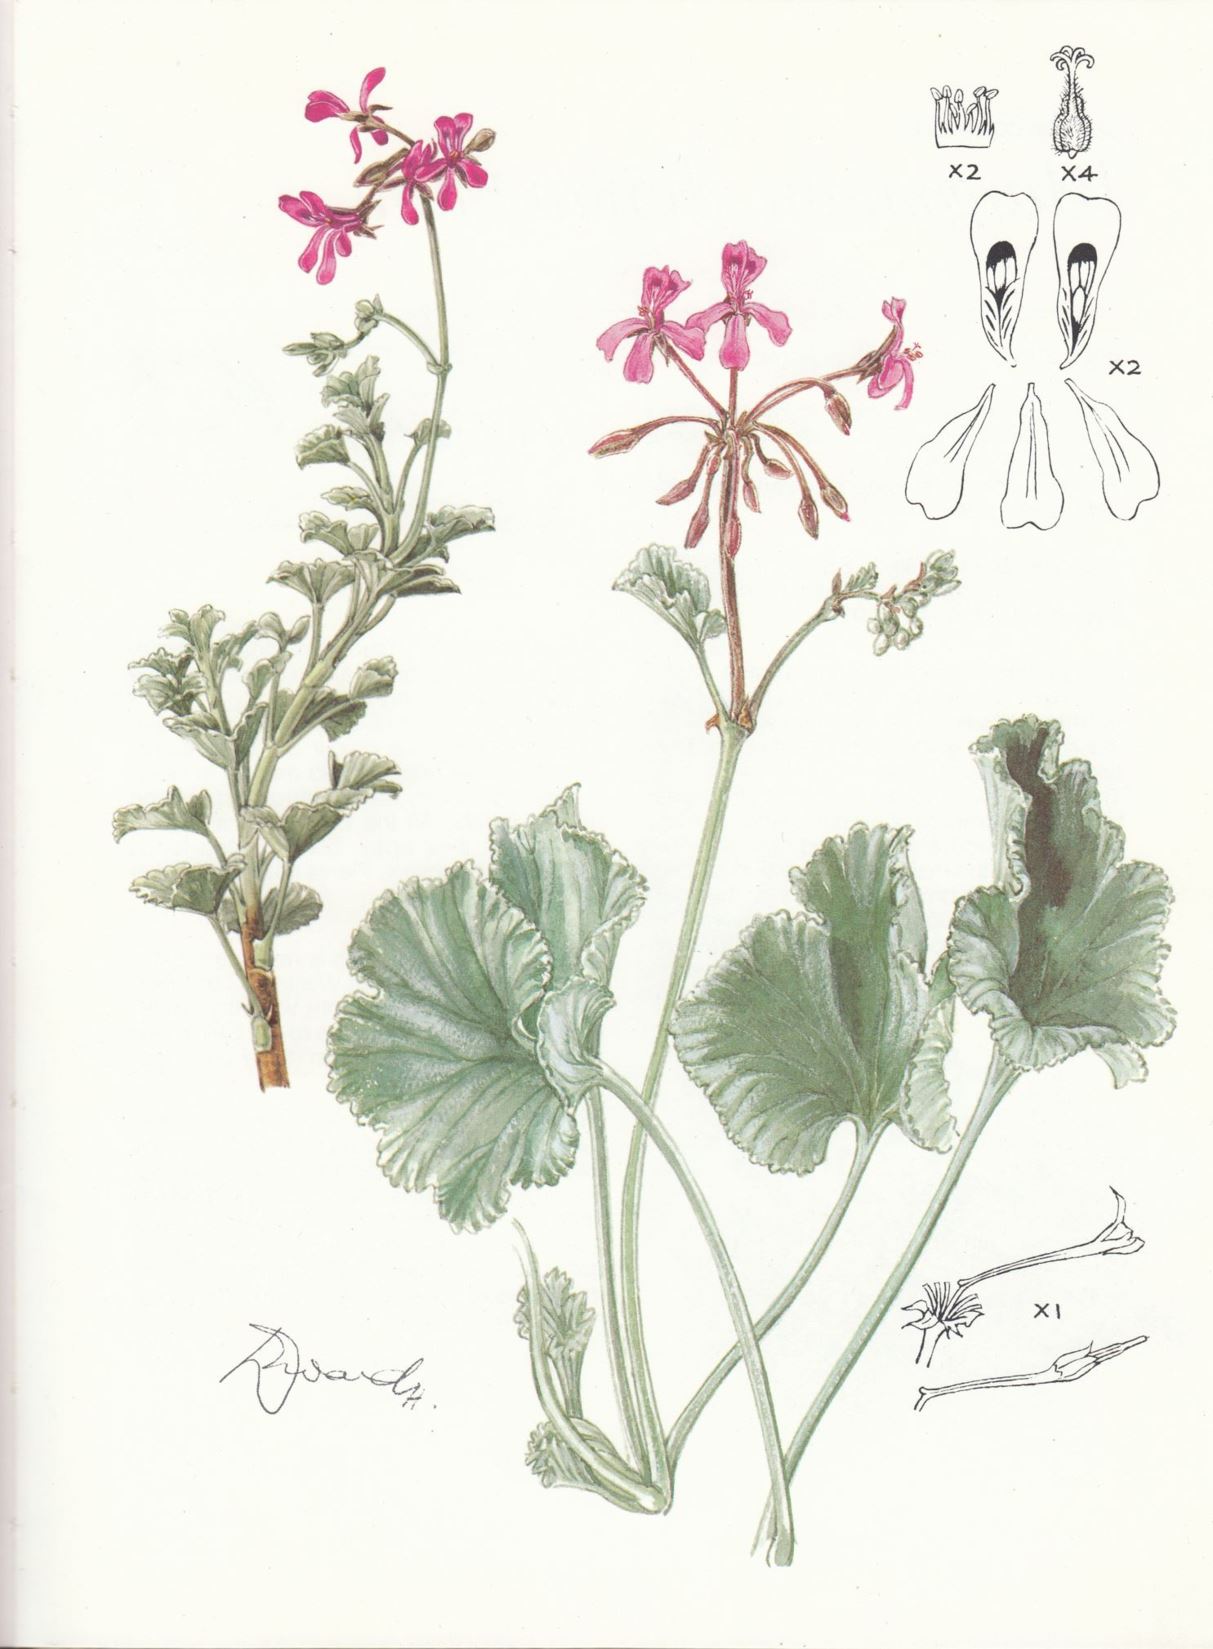 Pelargonium reniforme subsp. reniforme